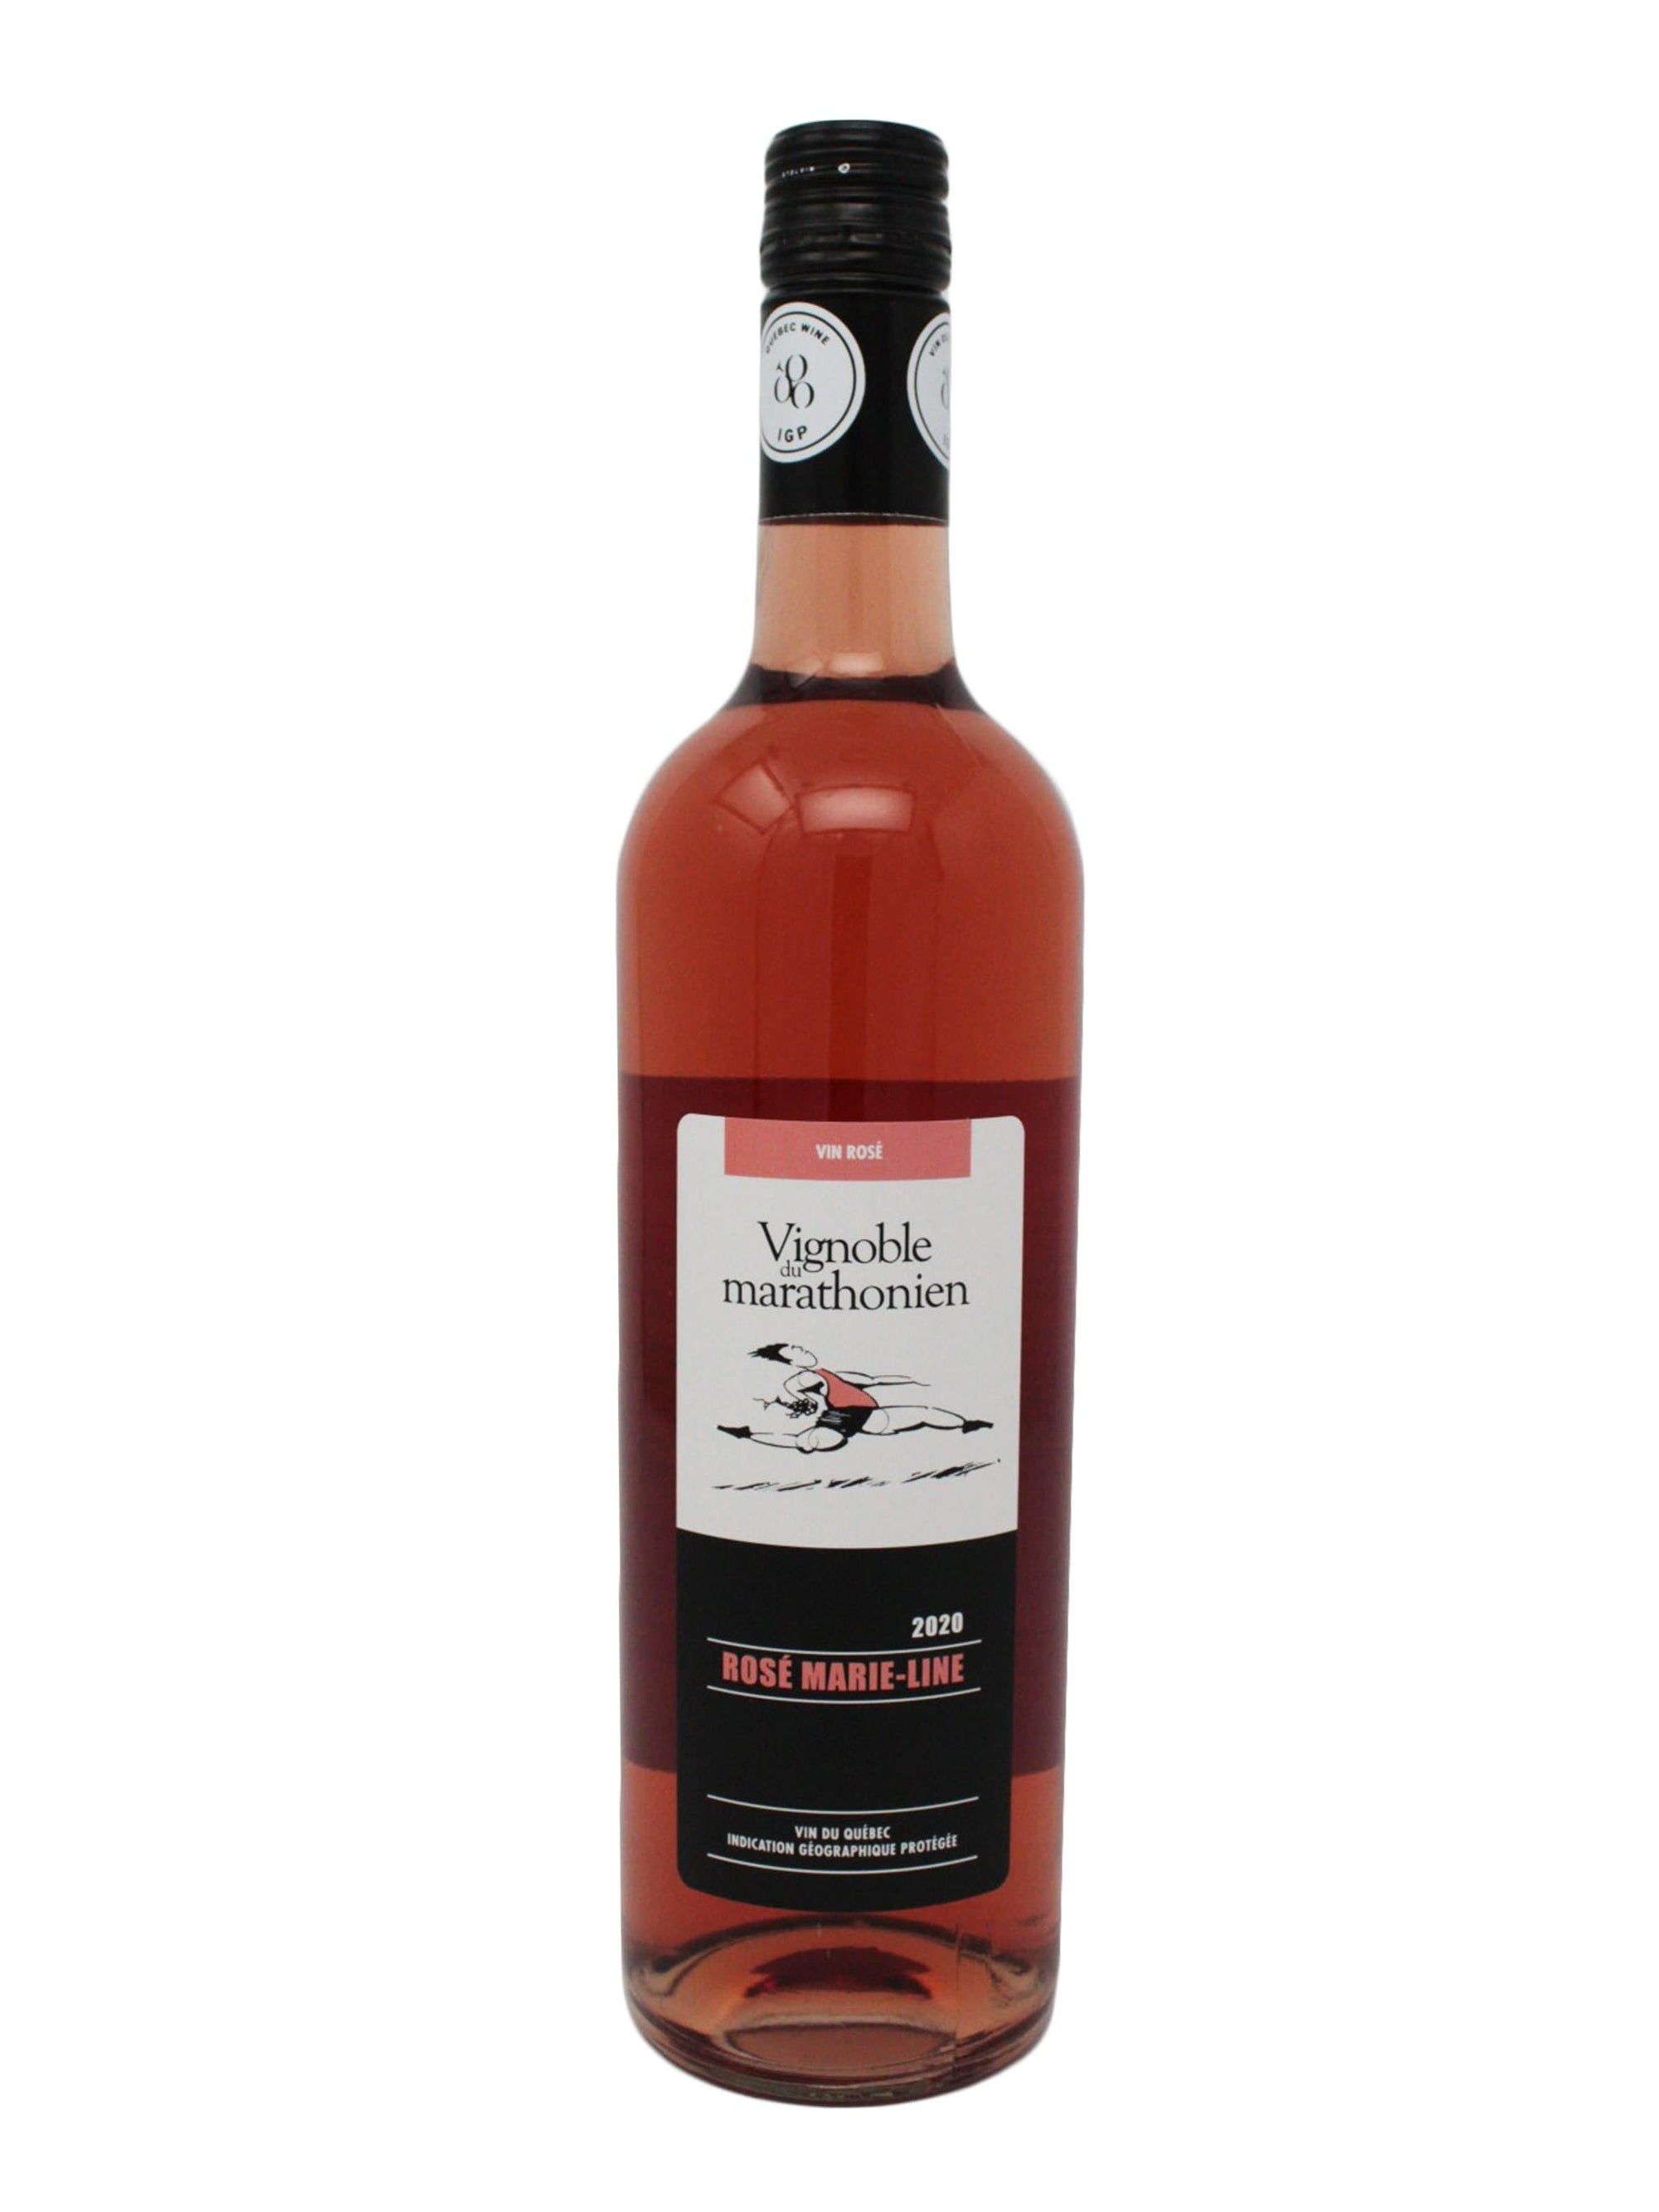 Vignoble du Marathonien vin Rosé Marie-Line - Vin rosé du Vignoble Le Marathonien